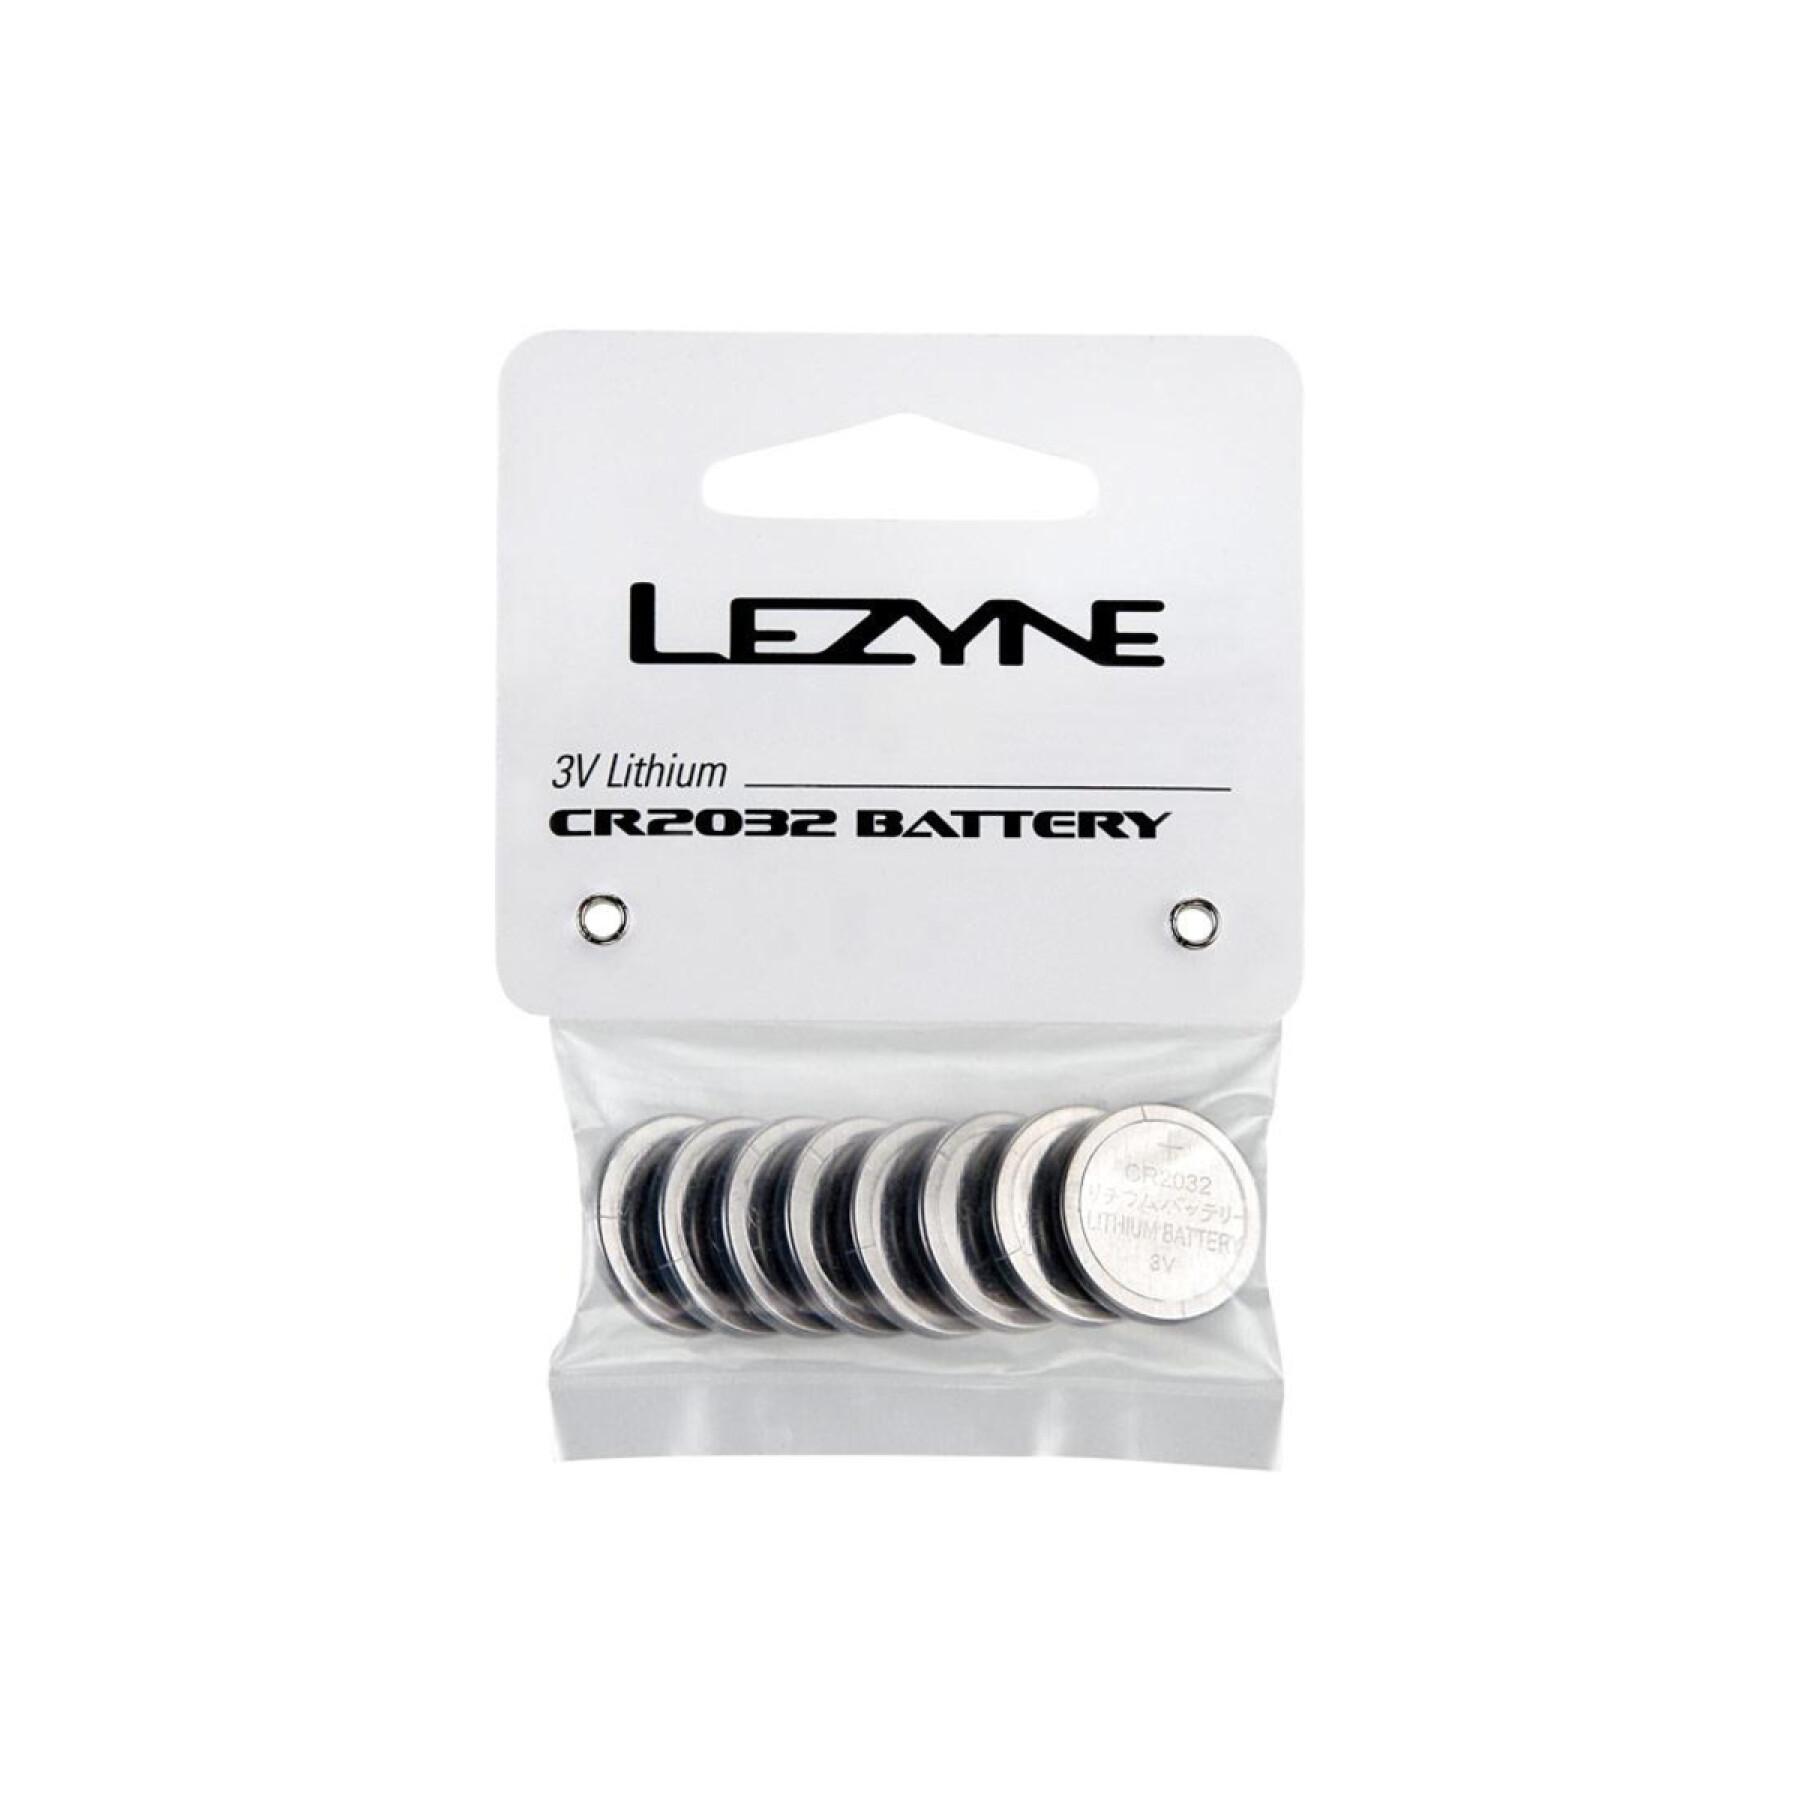 Pack of 8 batteries Lezyne CR2032